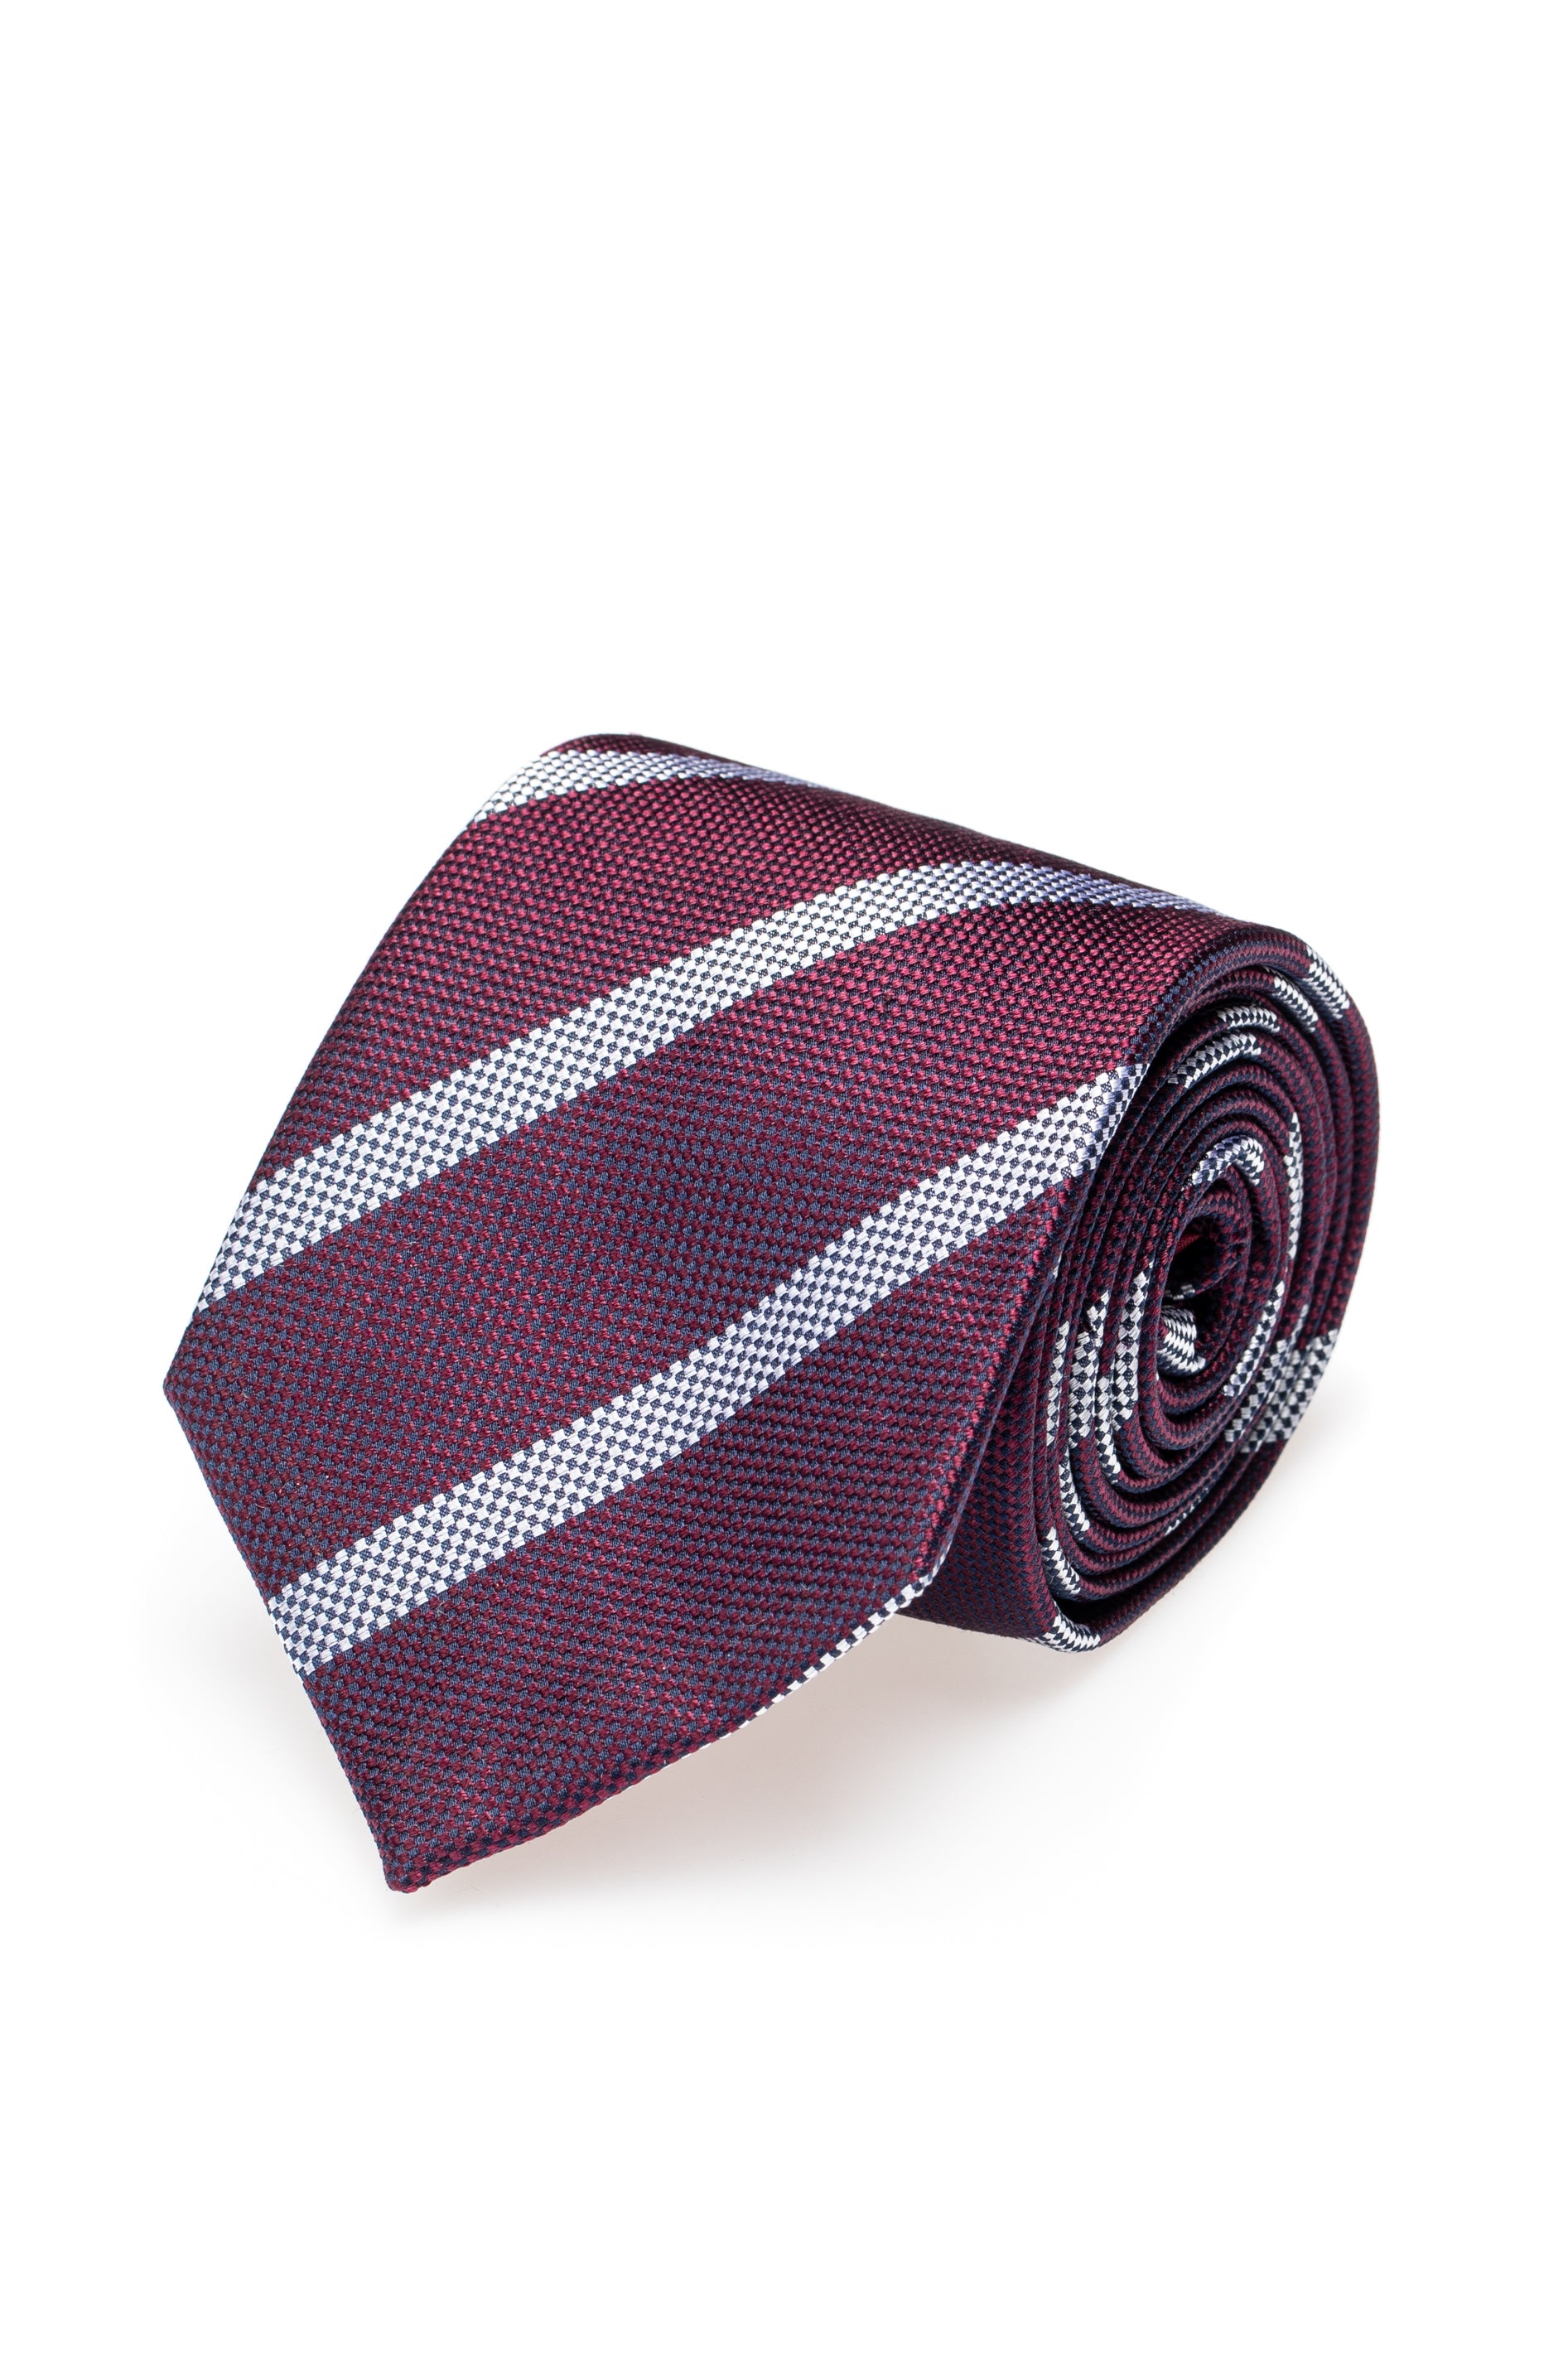 Cravatta in seta bordeaux a righe